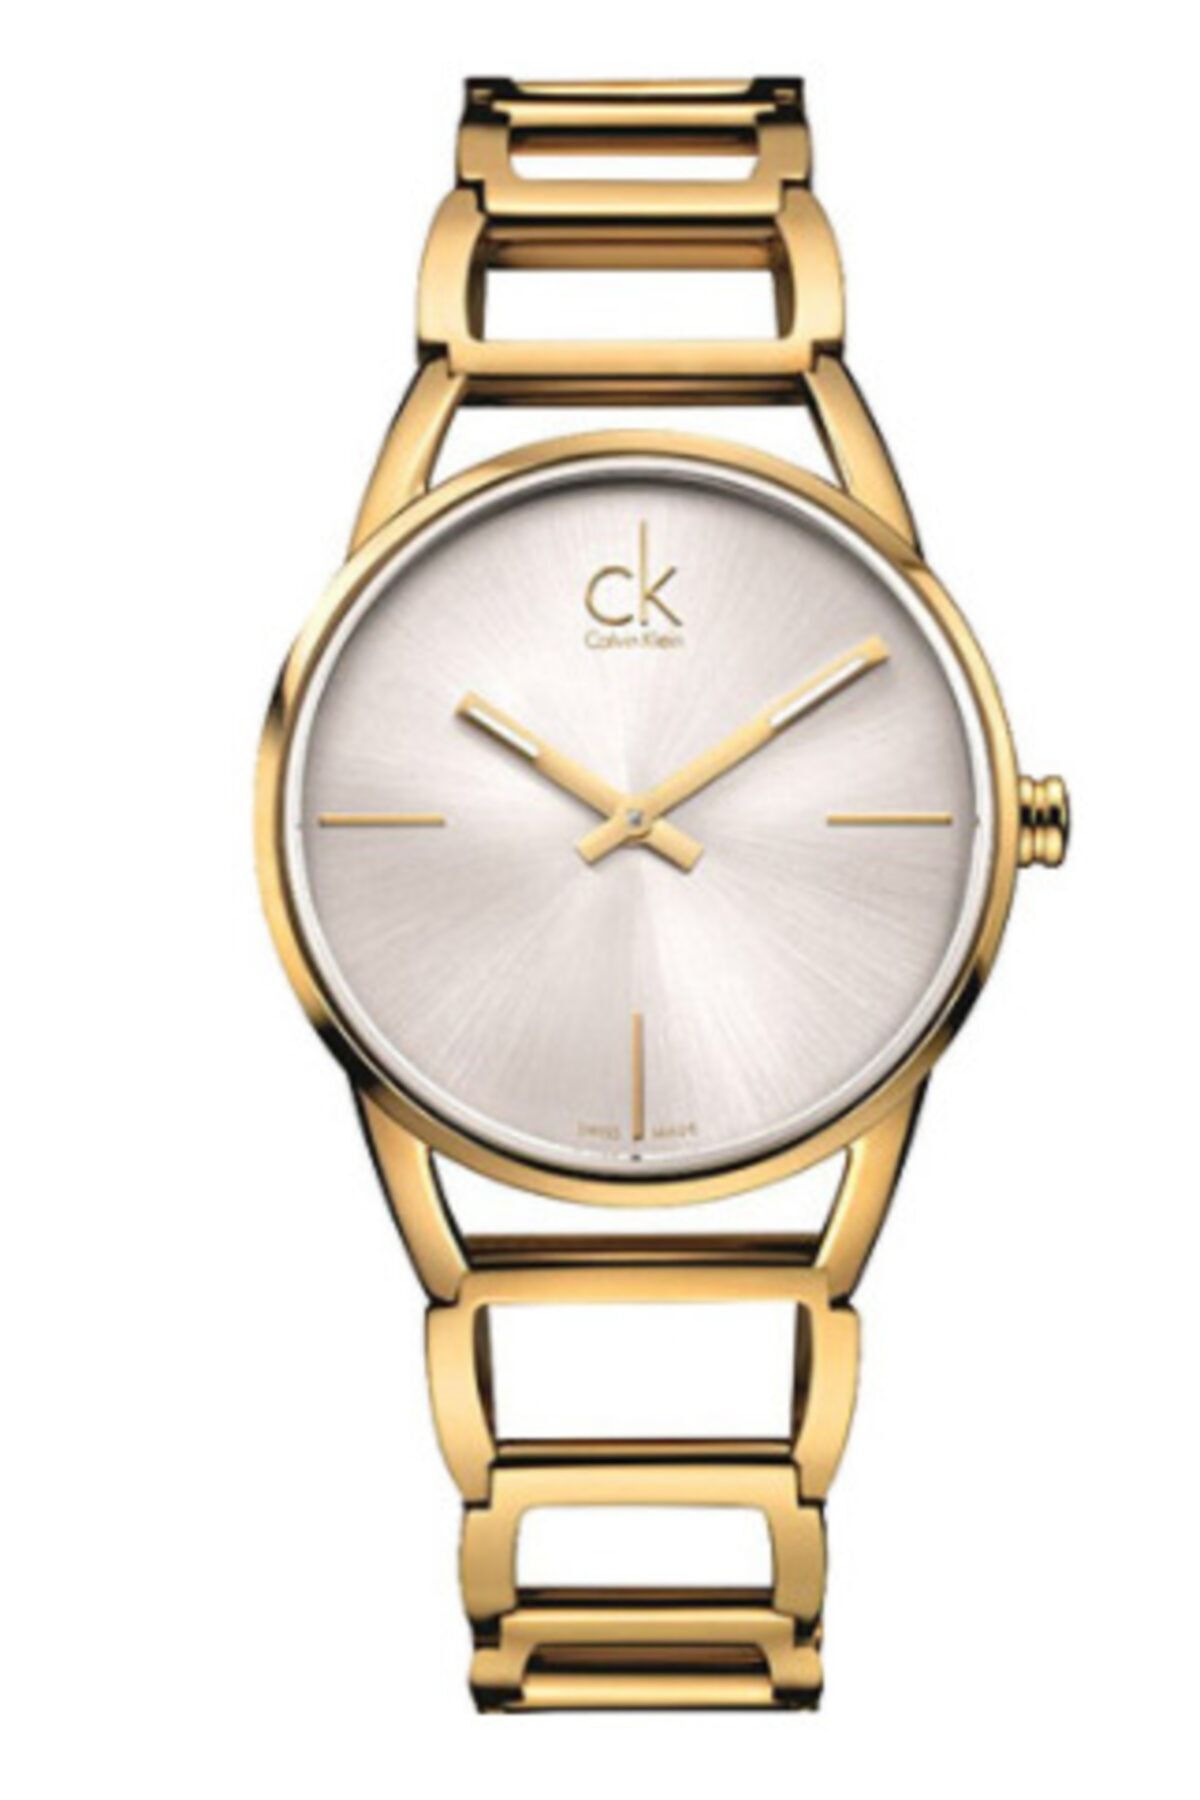 Calvin Klein Kadın Altın Gri Kol Saati Ck K3g23526